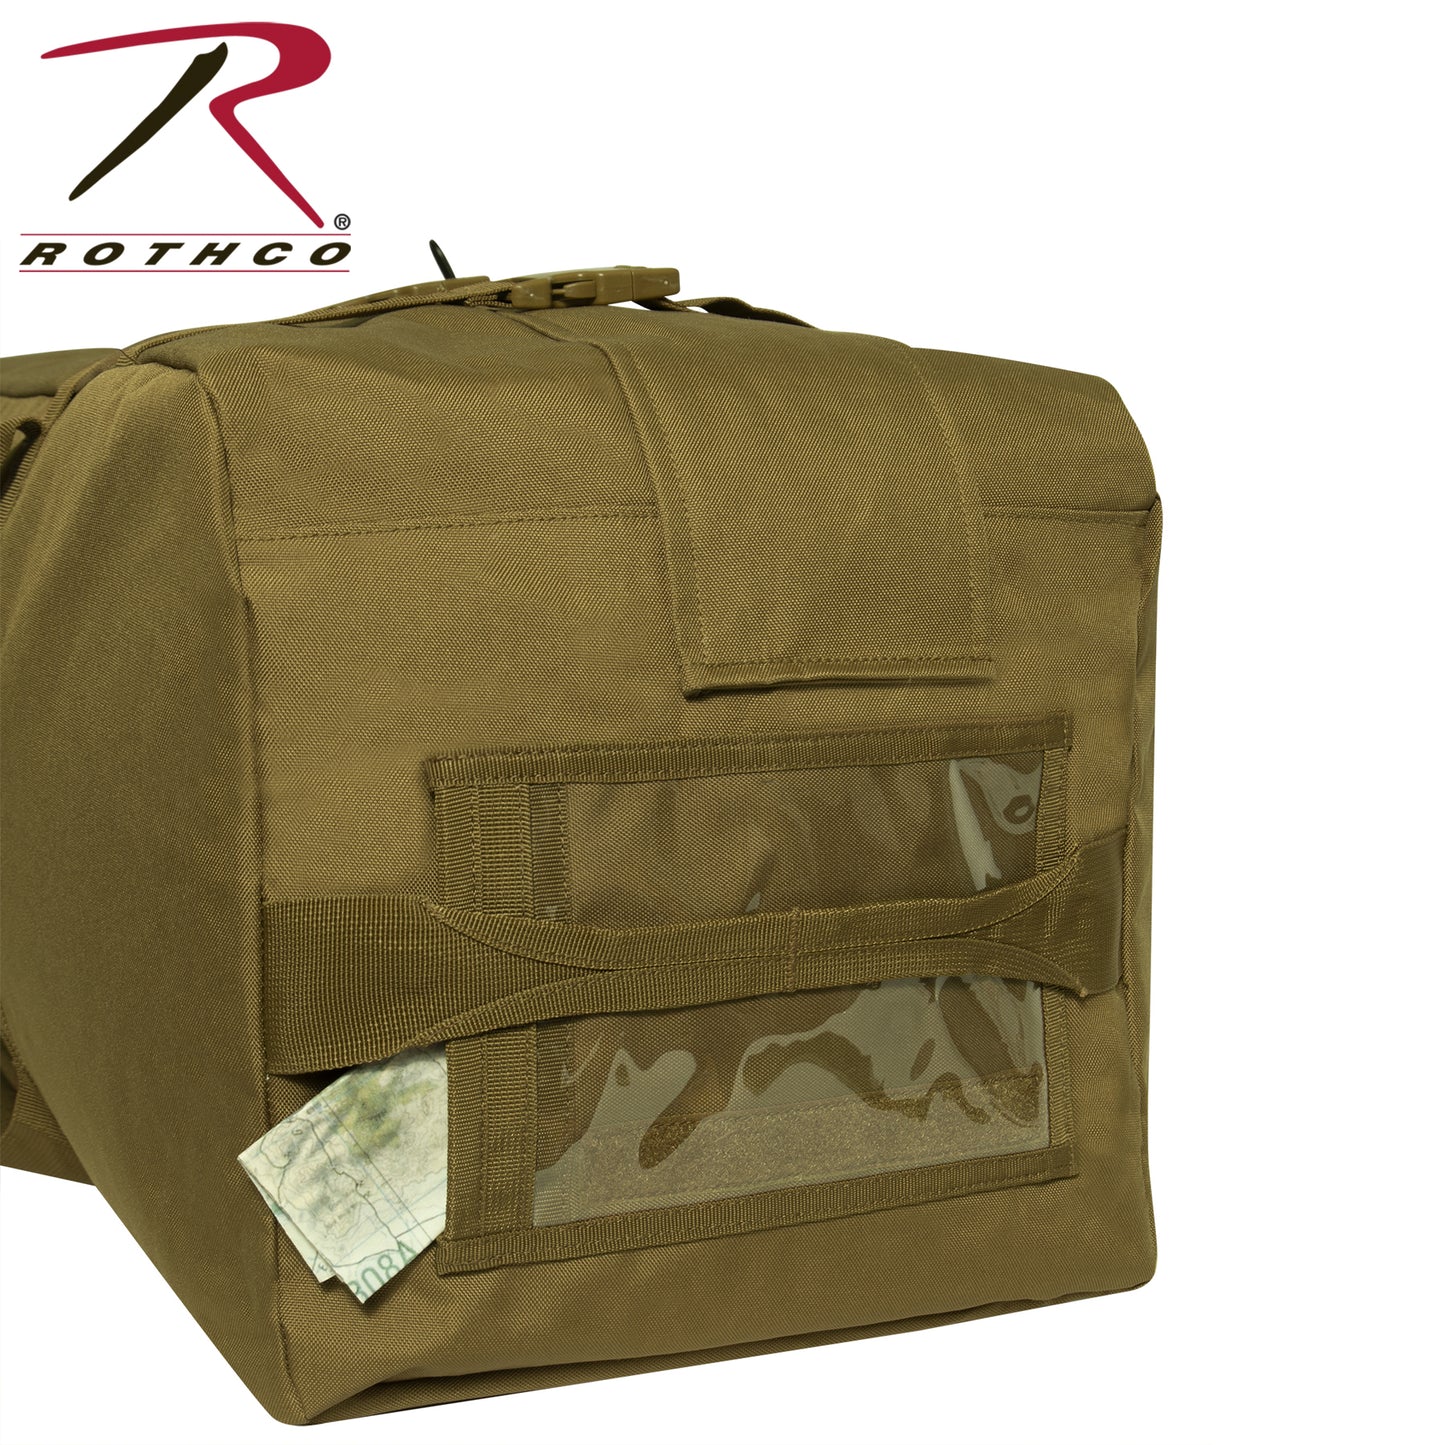 GI Type Enhanced Duffle Bag 32x12x12 - Rothco Nylon Carry Bag